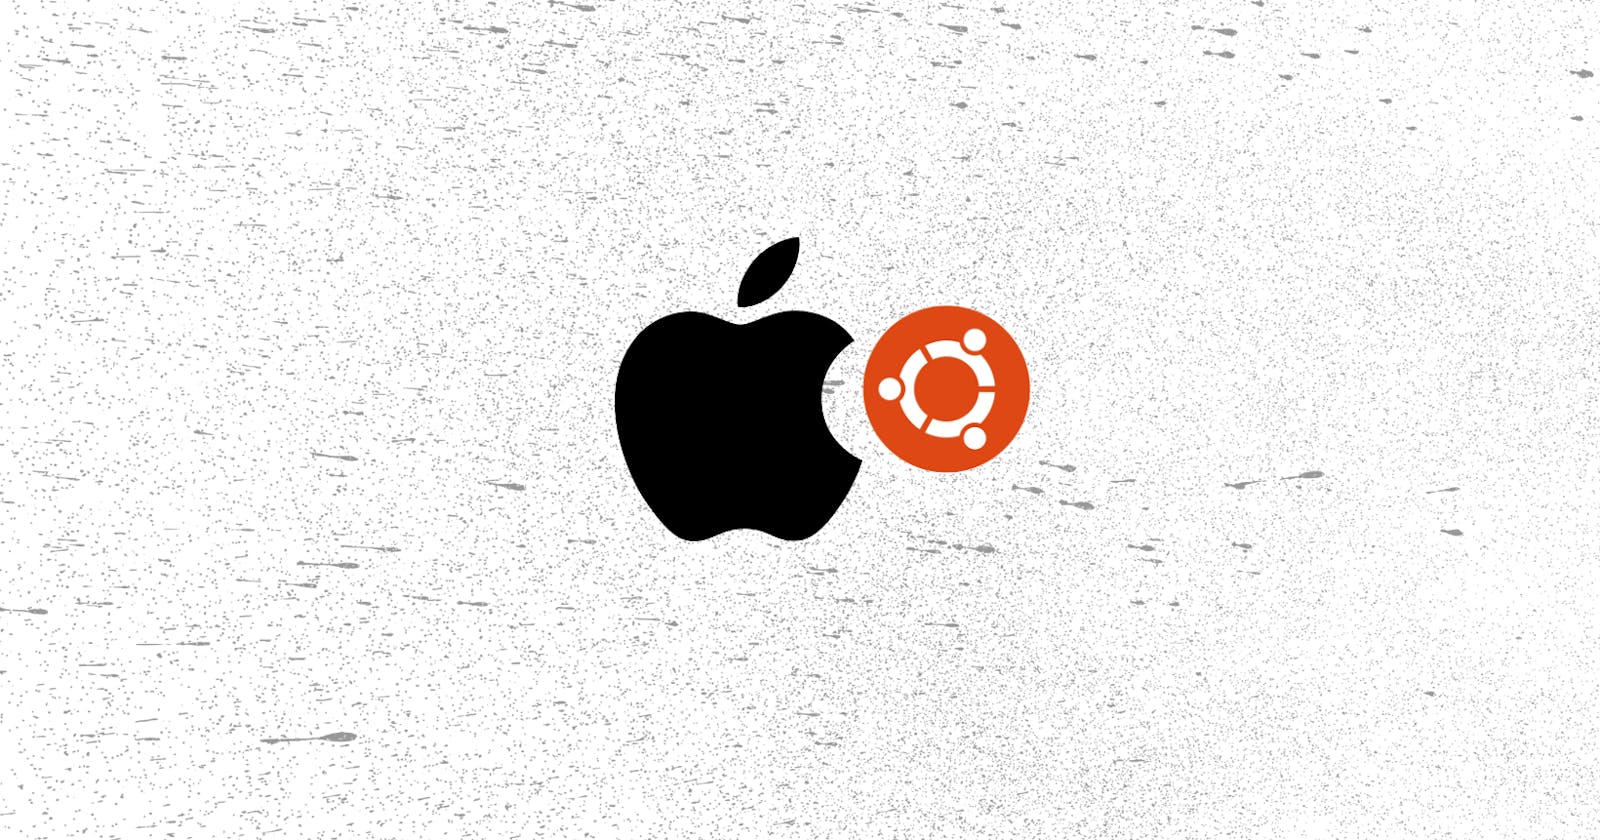 Run Ubuntu on M1 Macbook Air using UTM